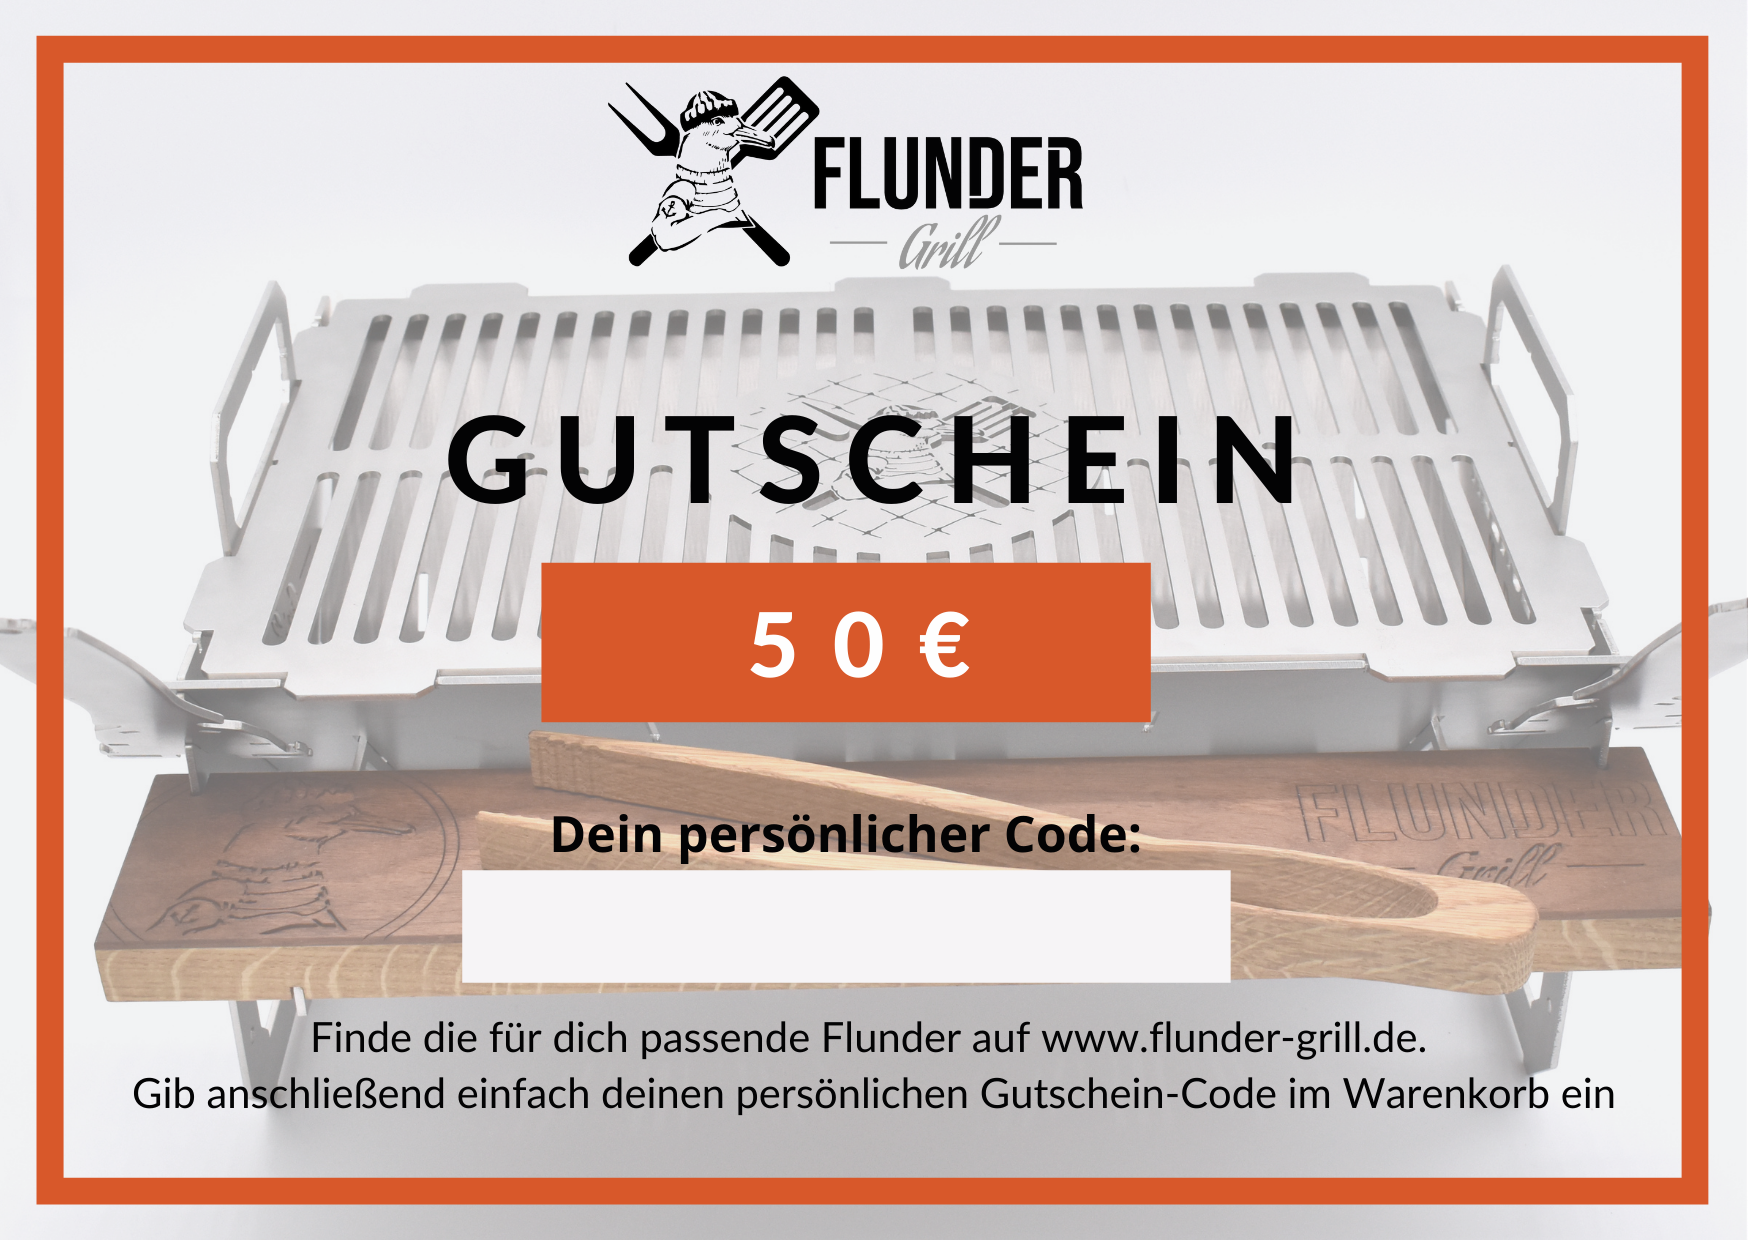  Flunder-Grill Geschenkgutschein 50 Euro